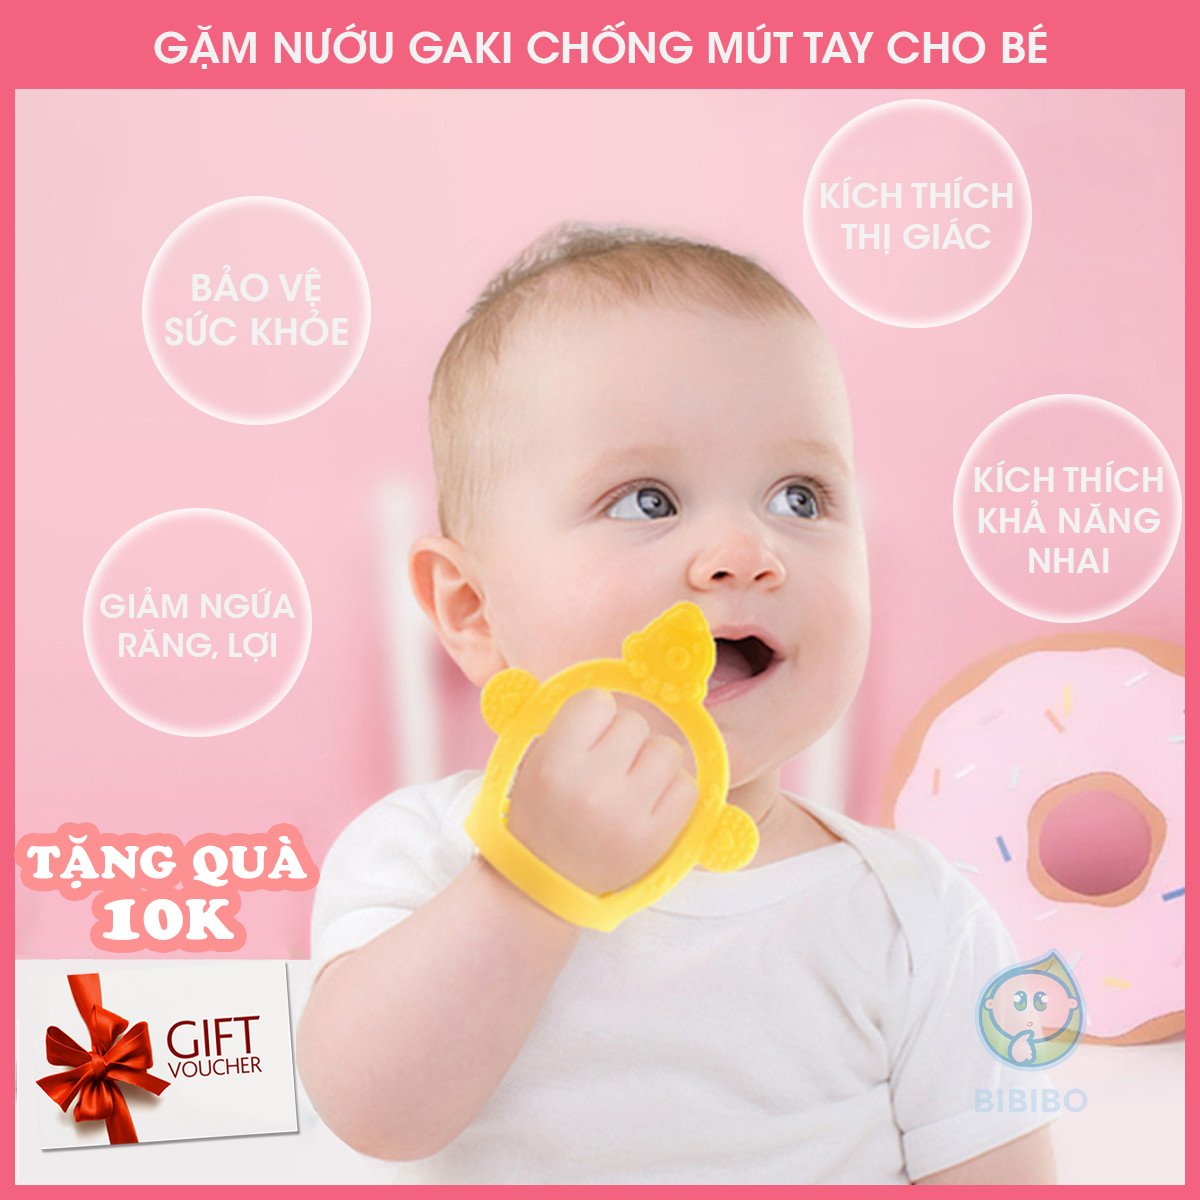 Gặm nướu cho bé silicon GAKI G22 chống mút tay, ngậm nướu mềm cho bé cắn an toàn và không gây đau nướu lợi, kích thích mọc răng, bảo hành lỗi 1 đổi 1 - Shop BIBIBO